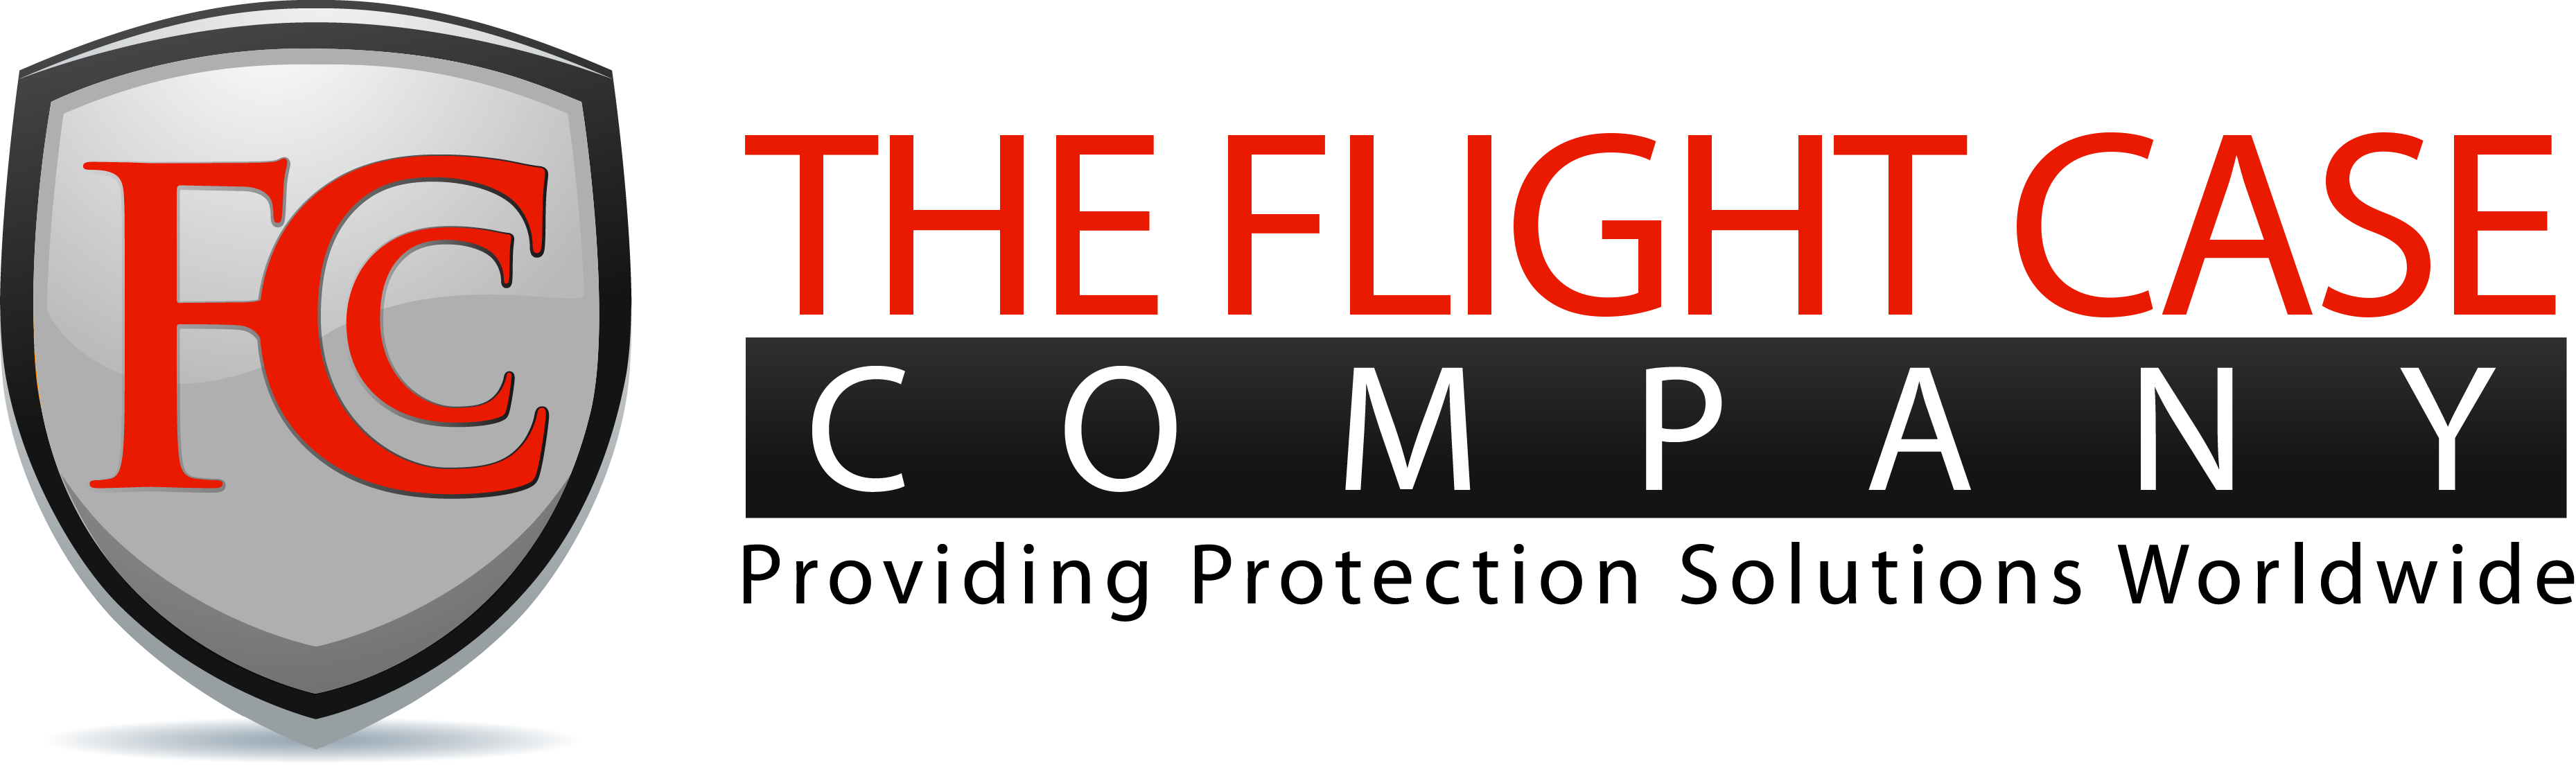 The Flight Case Company